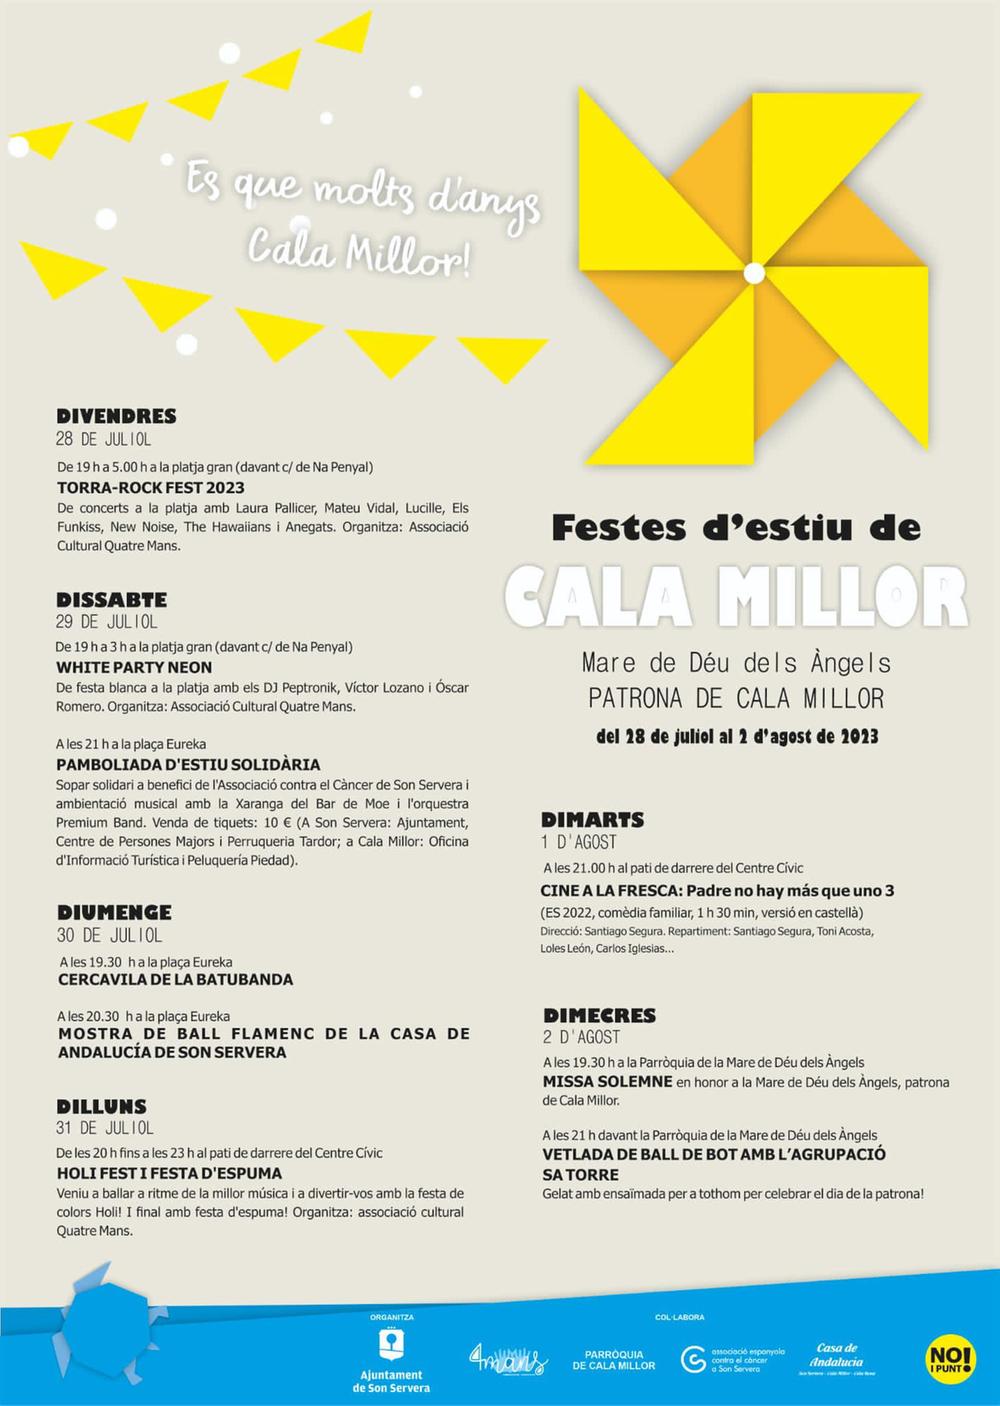 Fiestas de verano de Cala Millor 2023